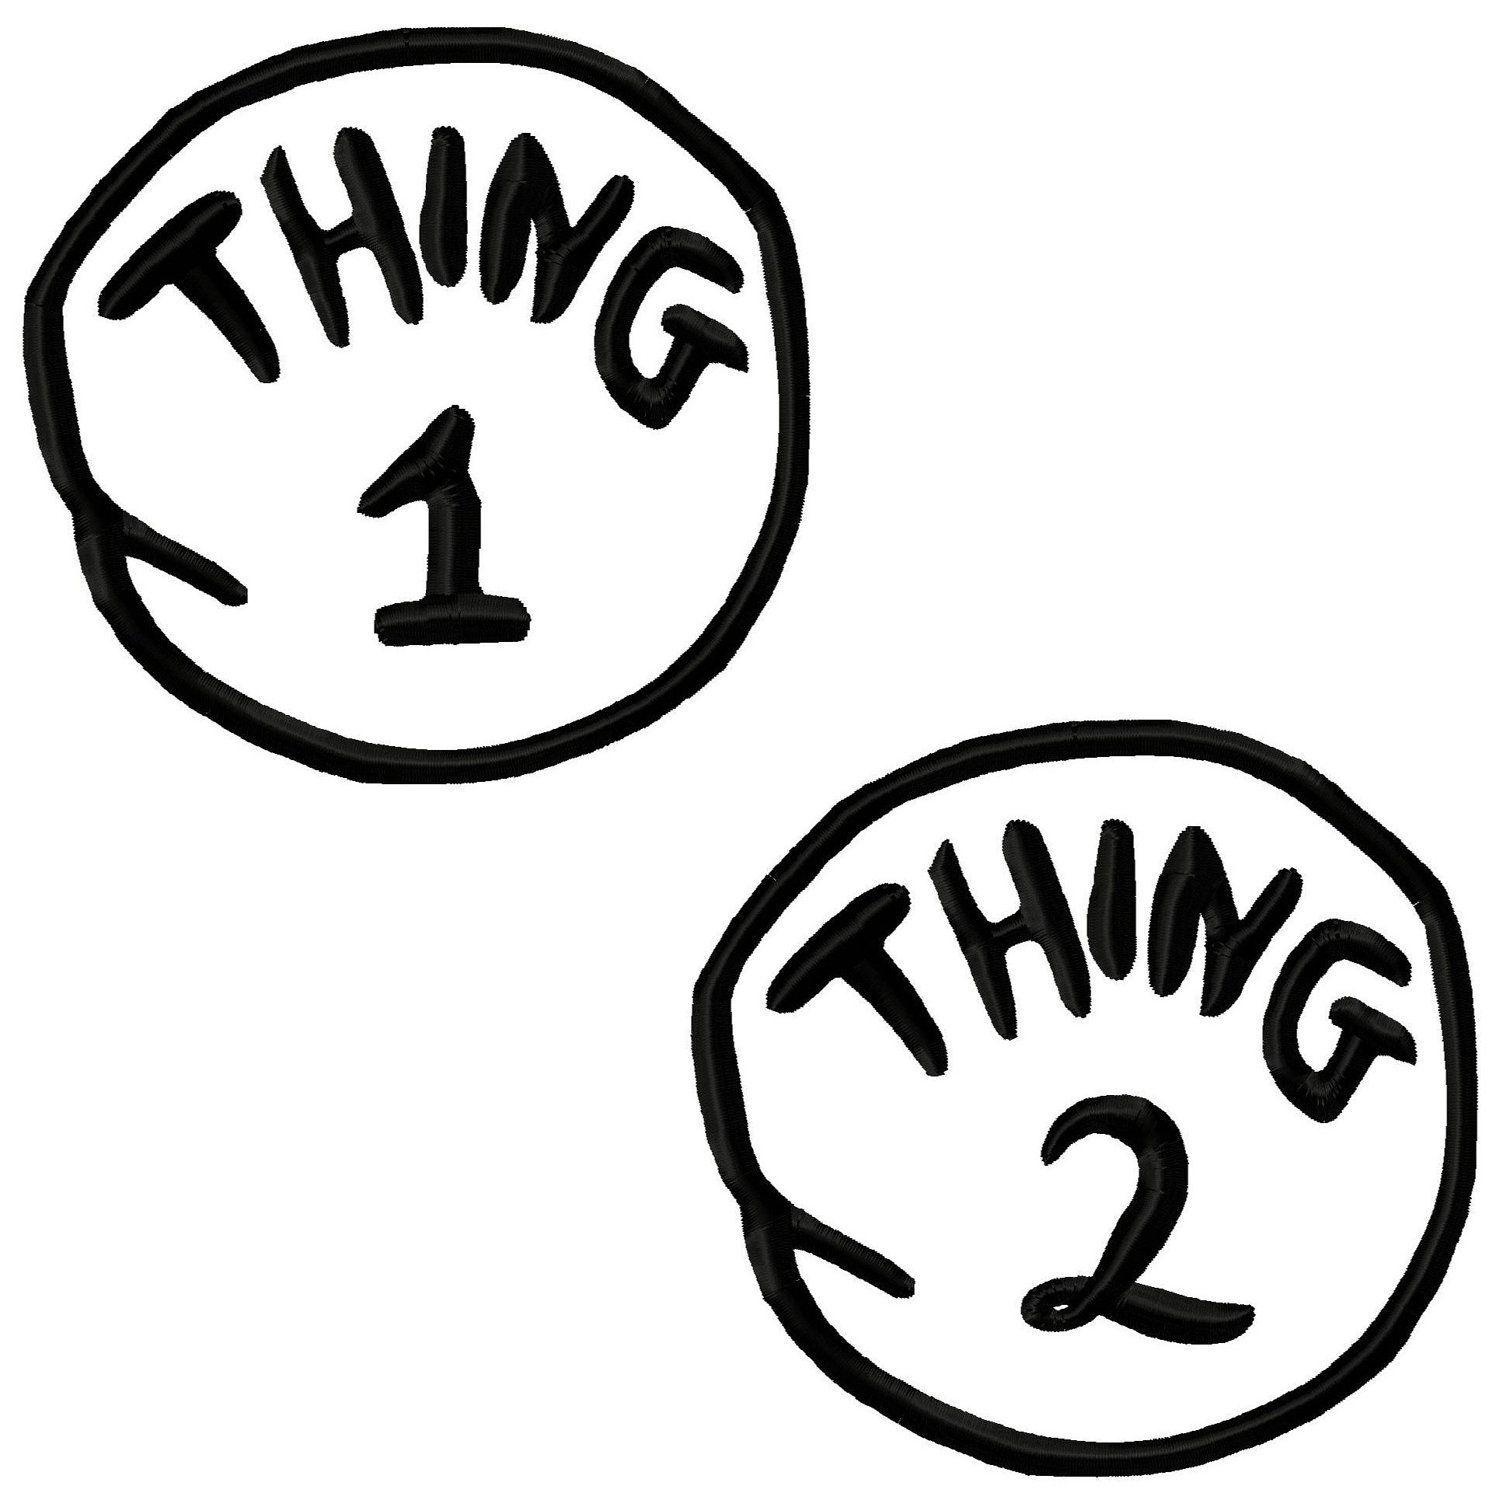 Thing Logo - Printable Thing 1 Logo Digital needlecraft pattern stores